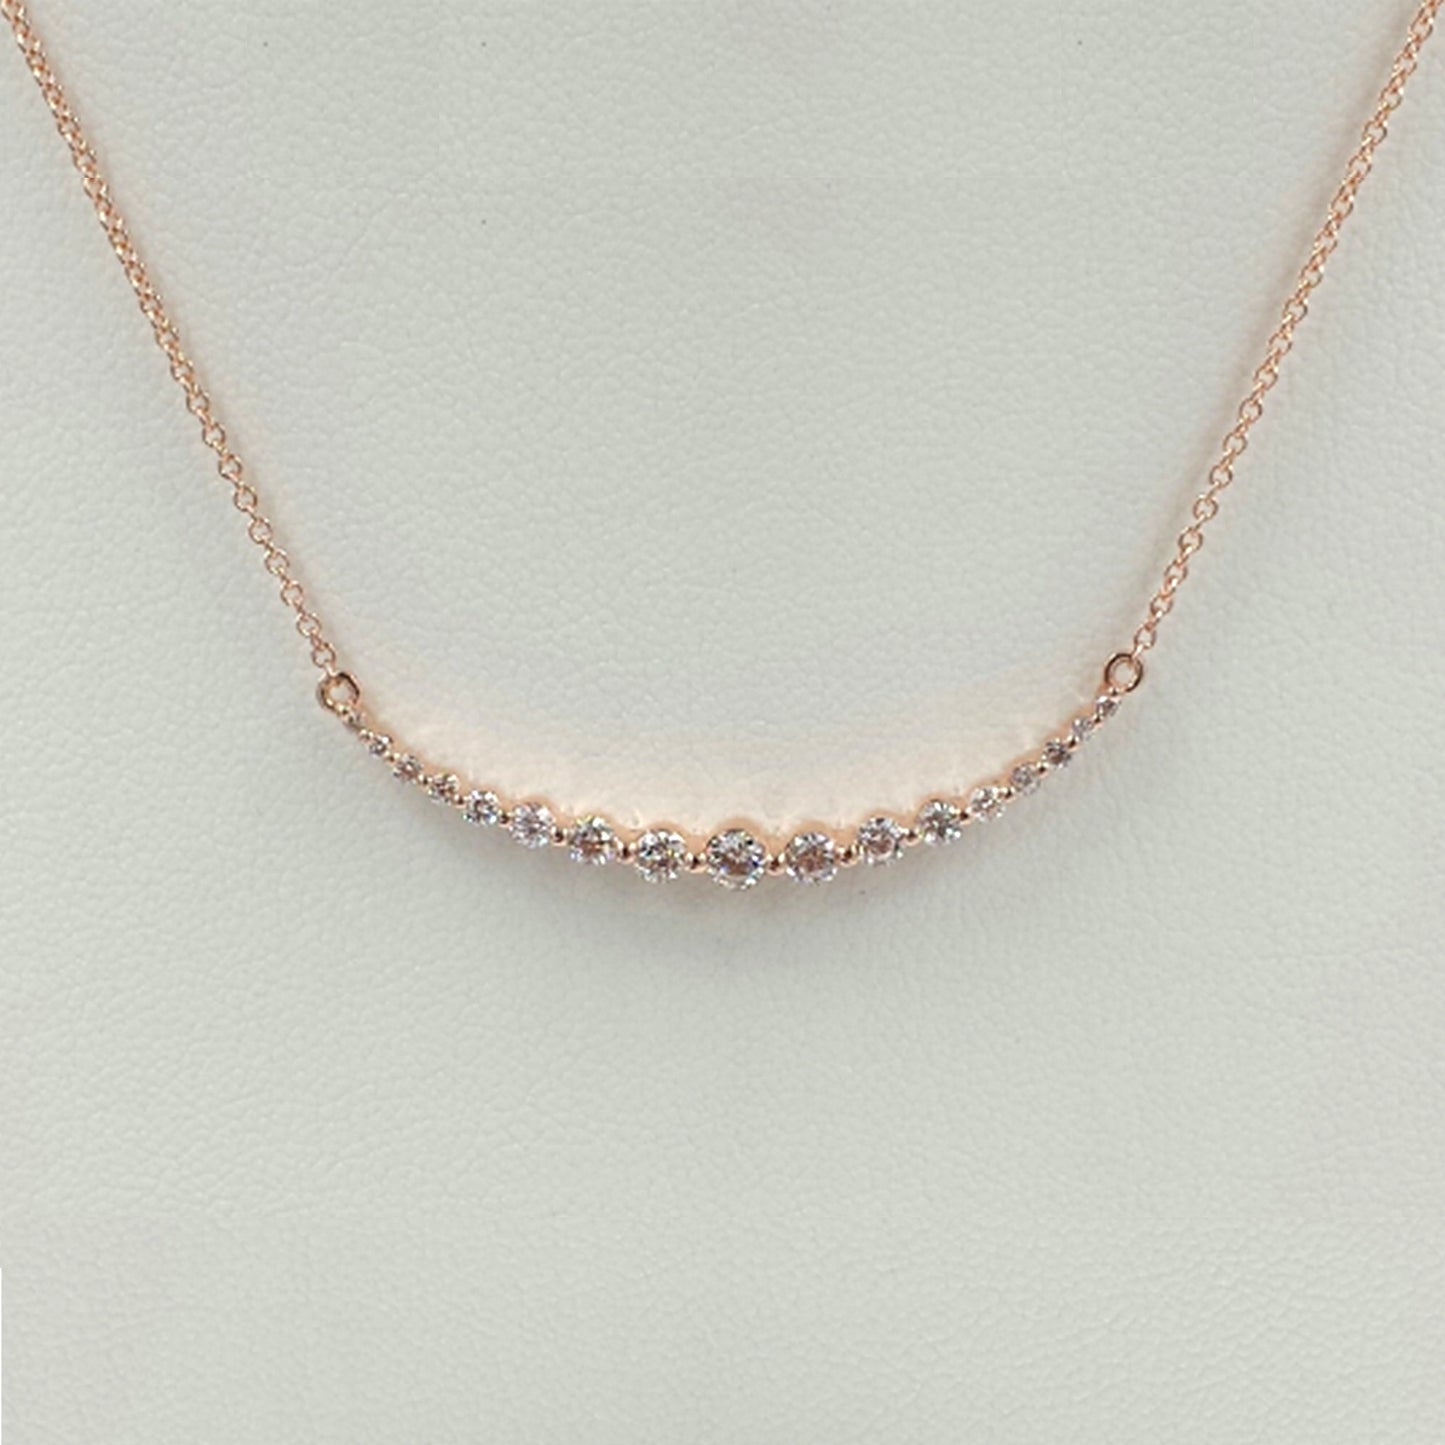 Diamond bar Necklace / 14K Gold Necklace / Anniversary Necklace / Anniversary Gift / Gift for Her